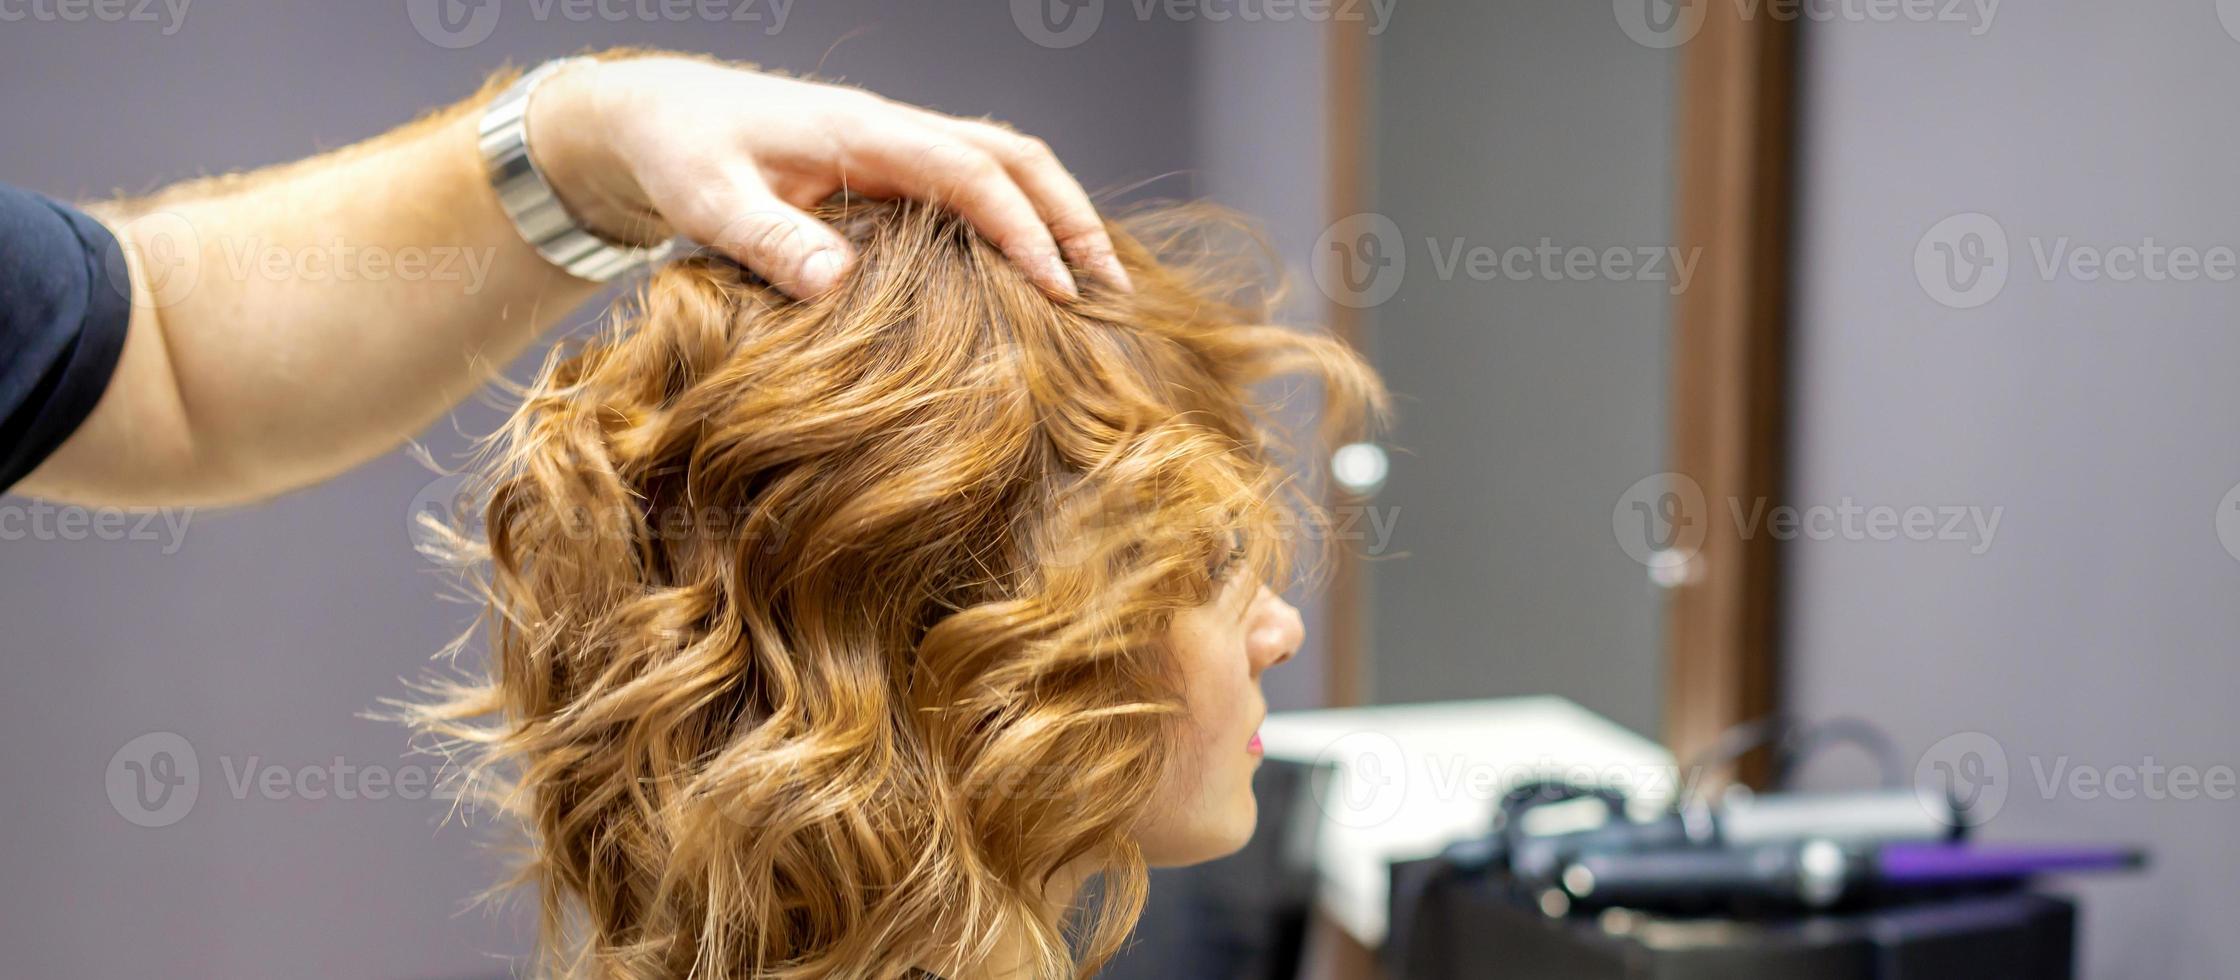 Friseur prüft lockig Frisur von Frau foto